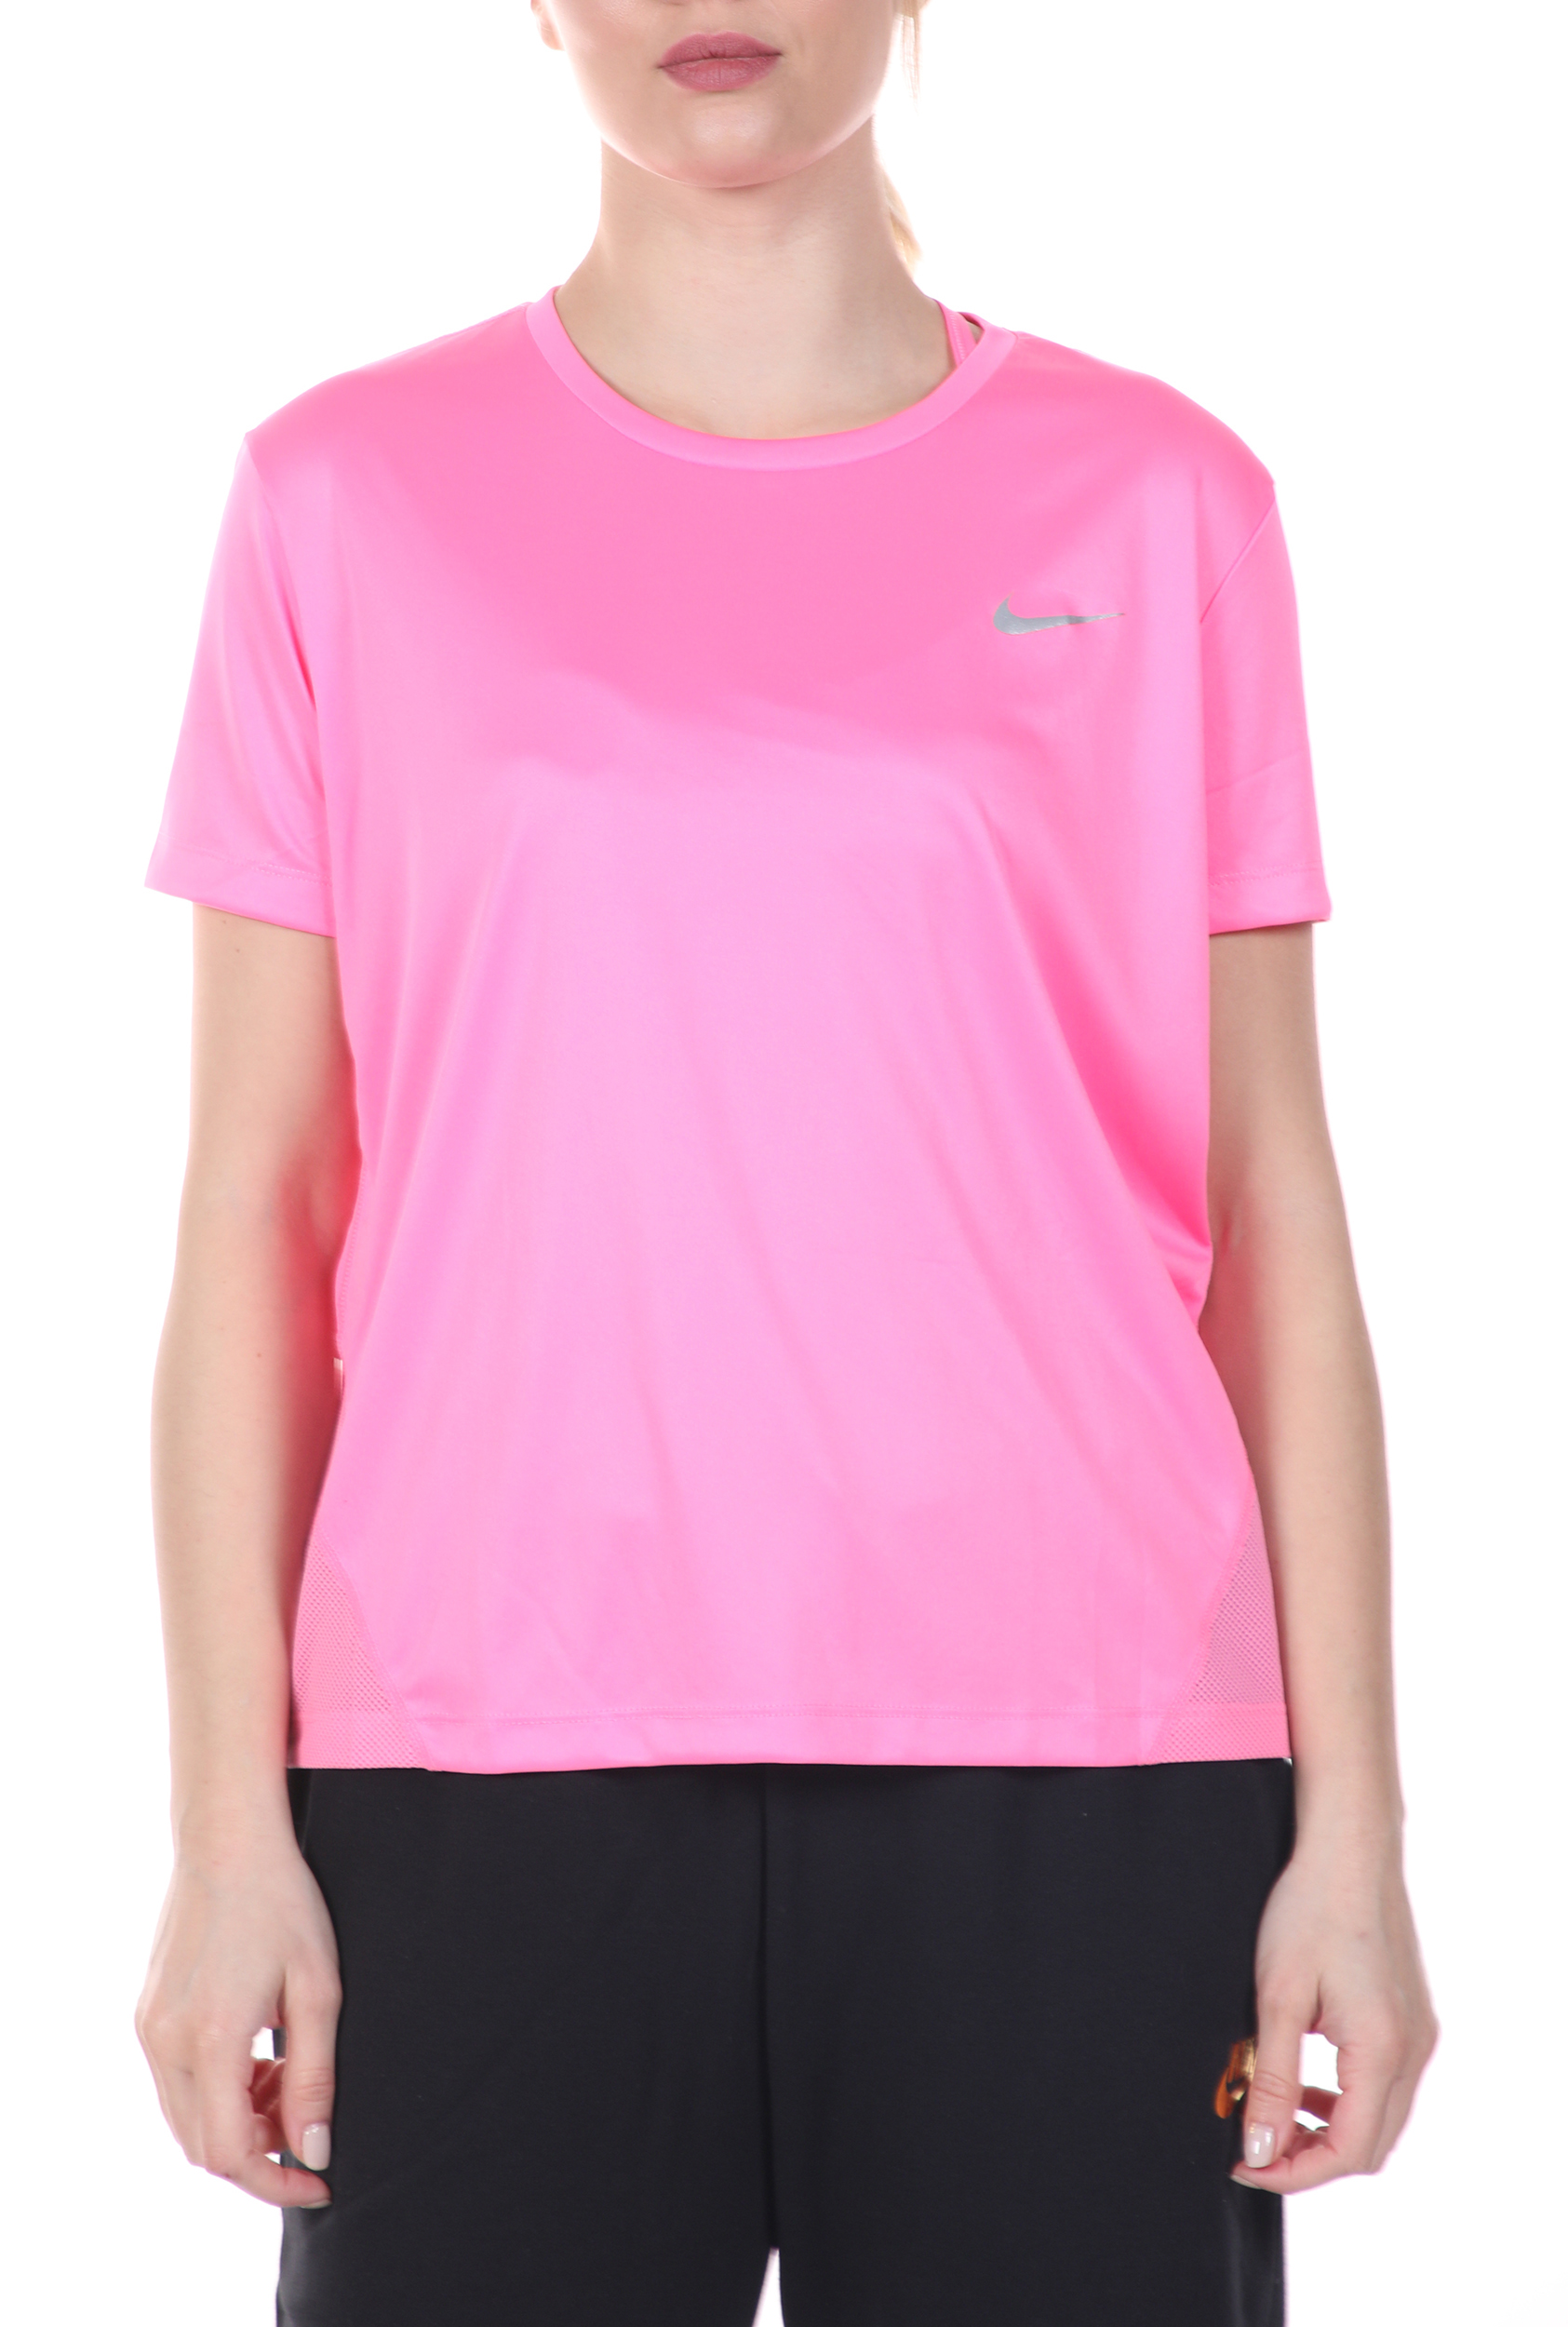 Γυναικεία/Ρούχα/Αθλητικά/T-shirt-Τοπ NIKE - Γυναικεία μπλούζα NIKE MILER TOP SS ροζ